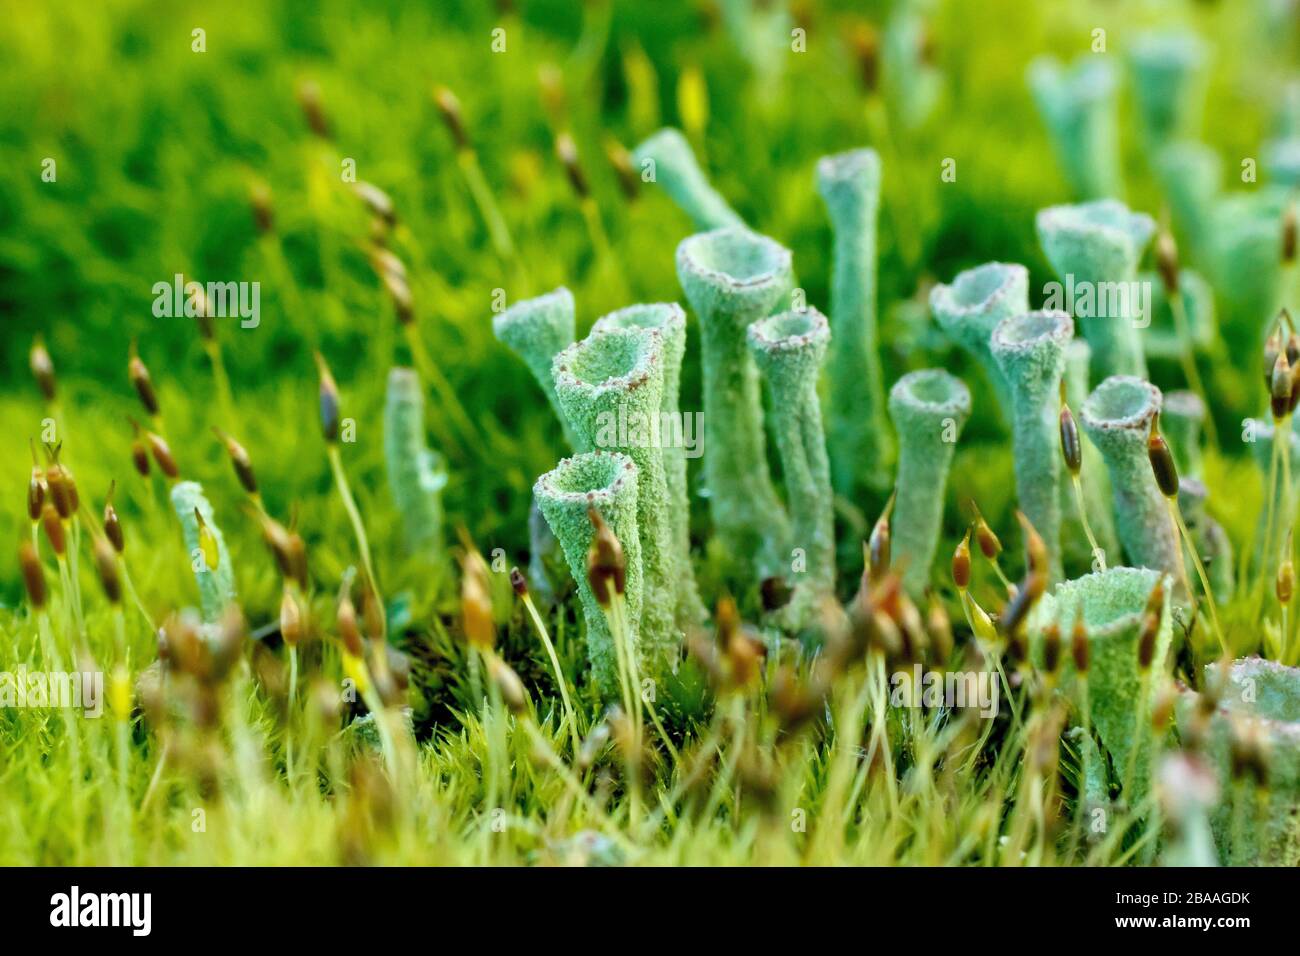 Primo piano che mostra il dettaglio di un lichene verde stalked, molto probabilmente Cladonia Fimbriata, che cresce attraverso il muschio in cima ad un fencepost. Foto Stock